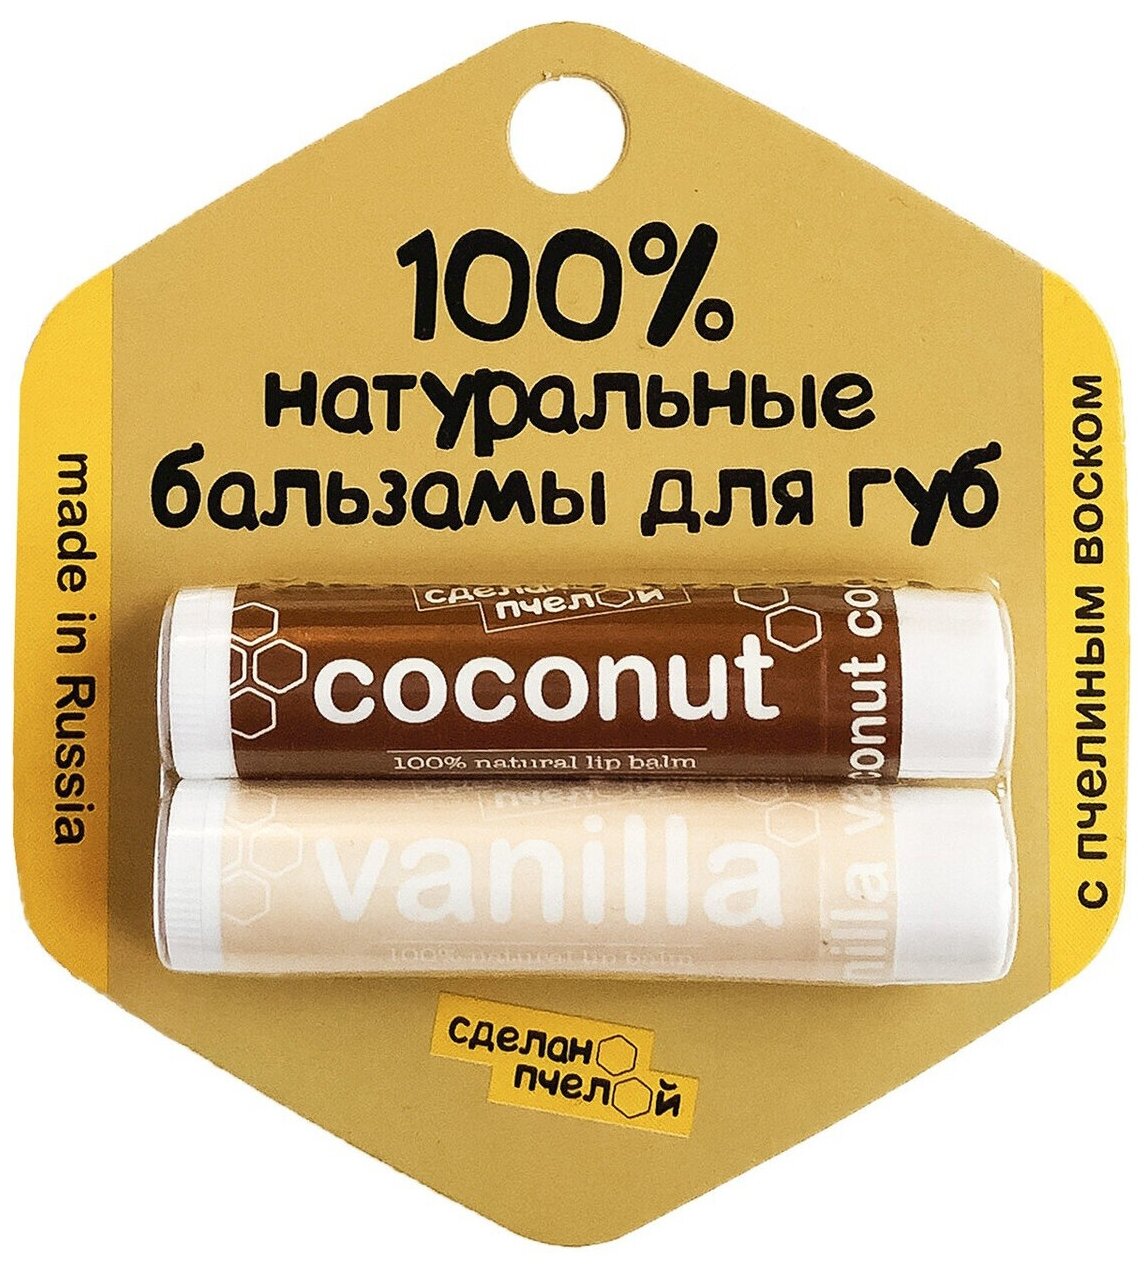 Бальзамы для губ "Coconut & Vanilla", с пчелиным воском Сделано пчелой 2 шт.